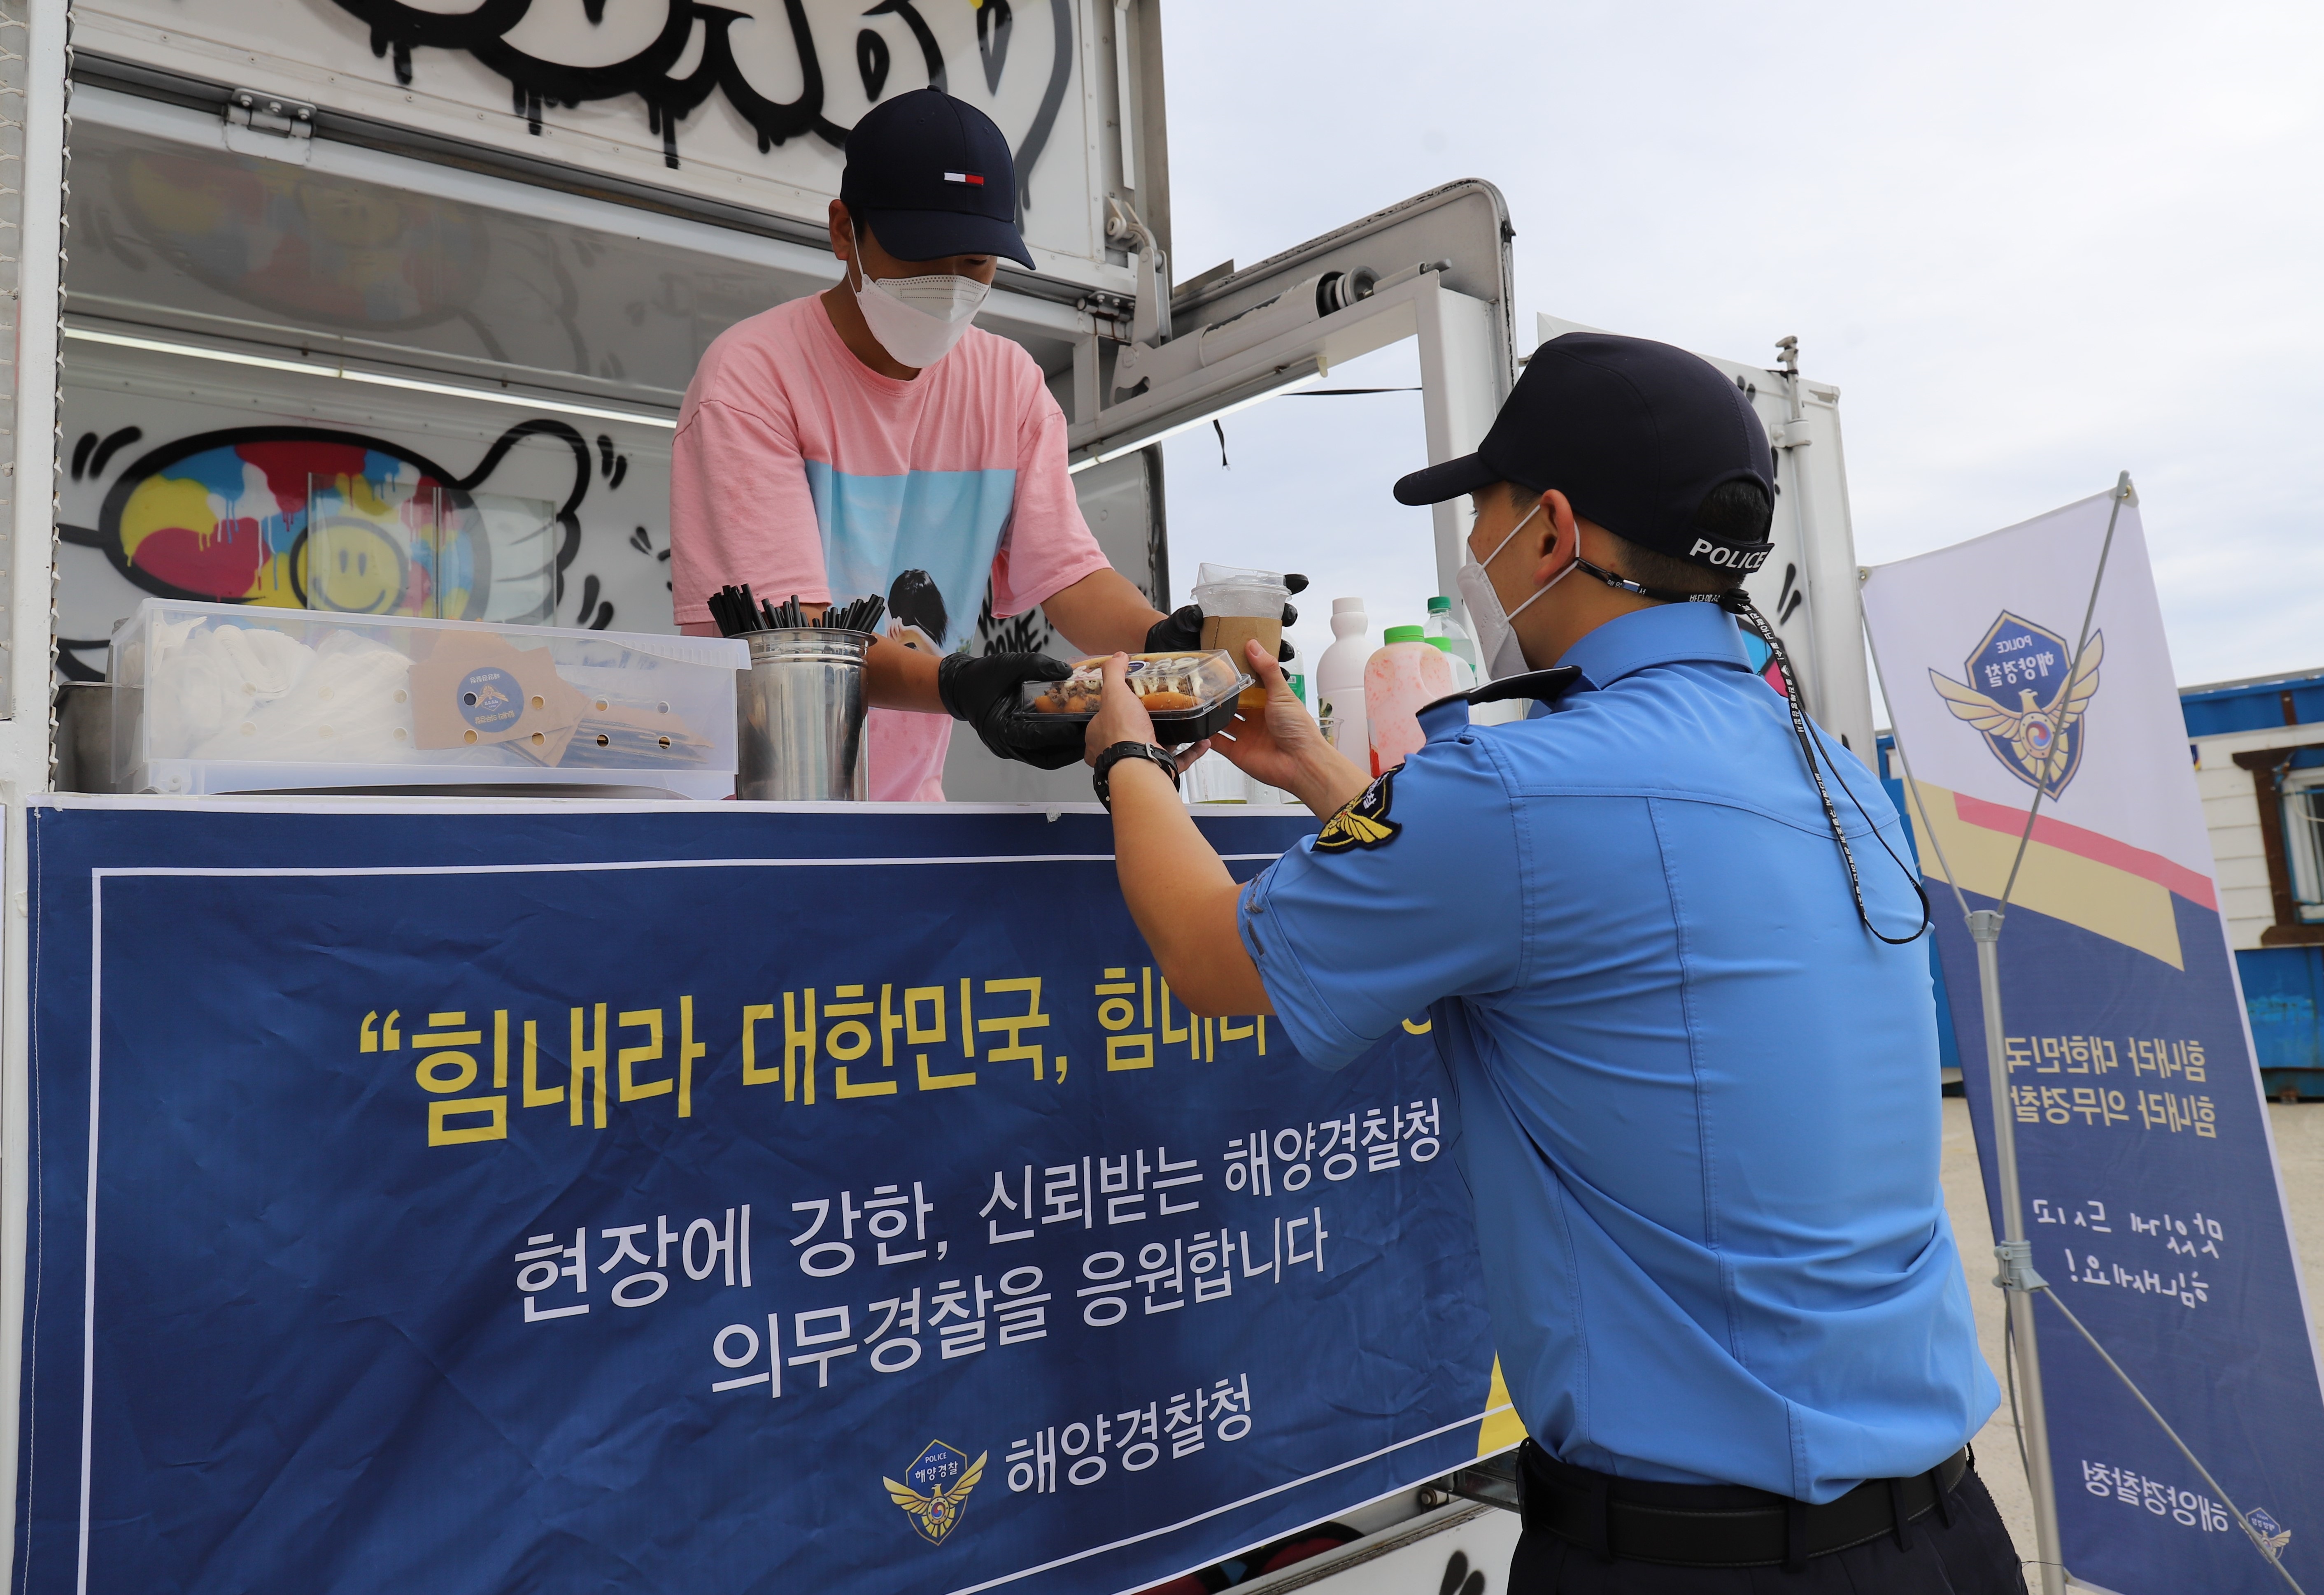 울진해경이 의무경찰 사기진작을 위해 해경전용부두에 푸드트럭을 지원하여 의무경찰에게 음료와 핫도그를 나눠 주었다 2